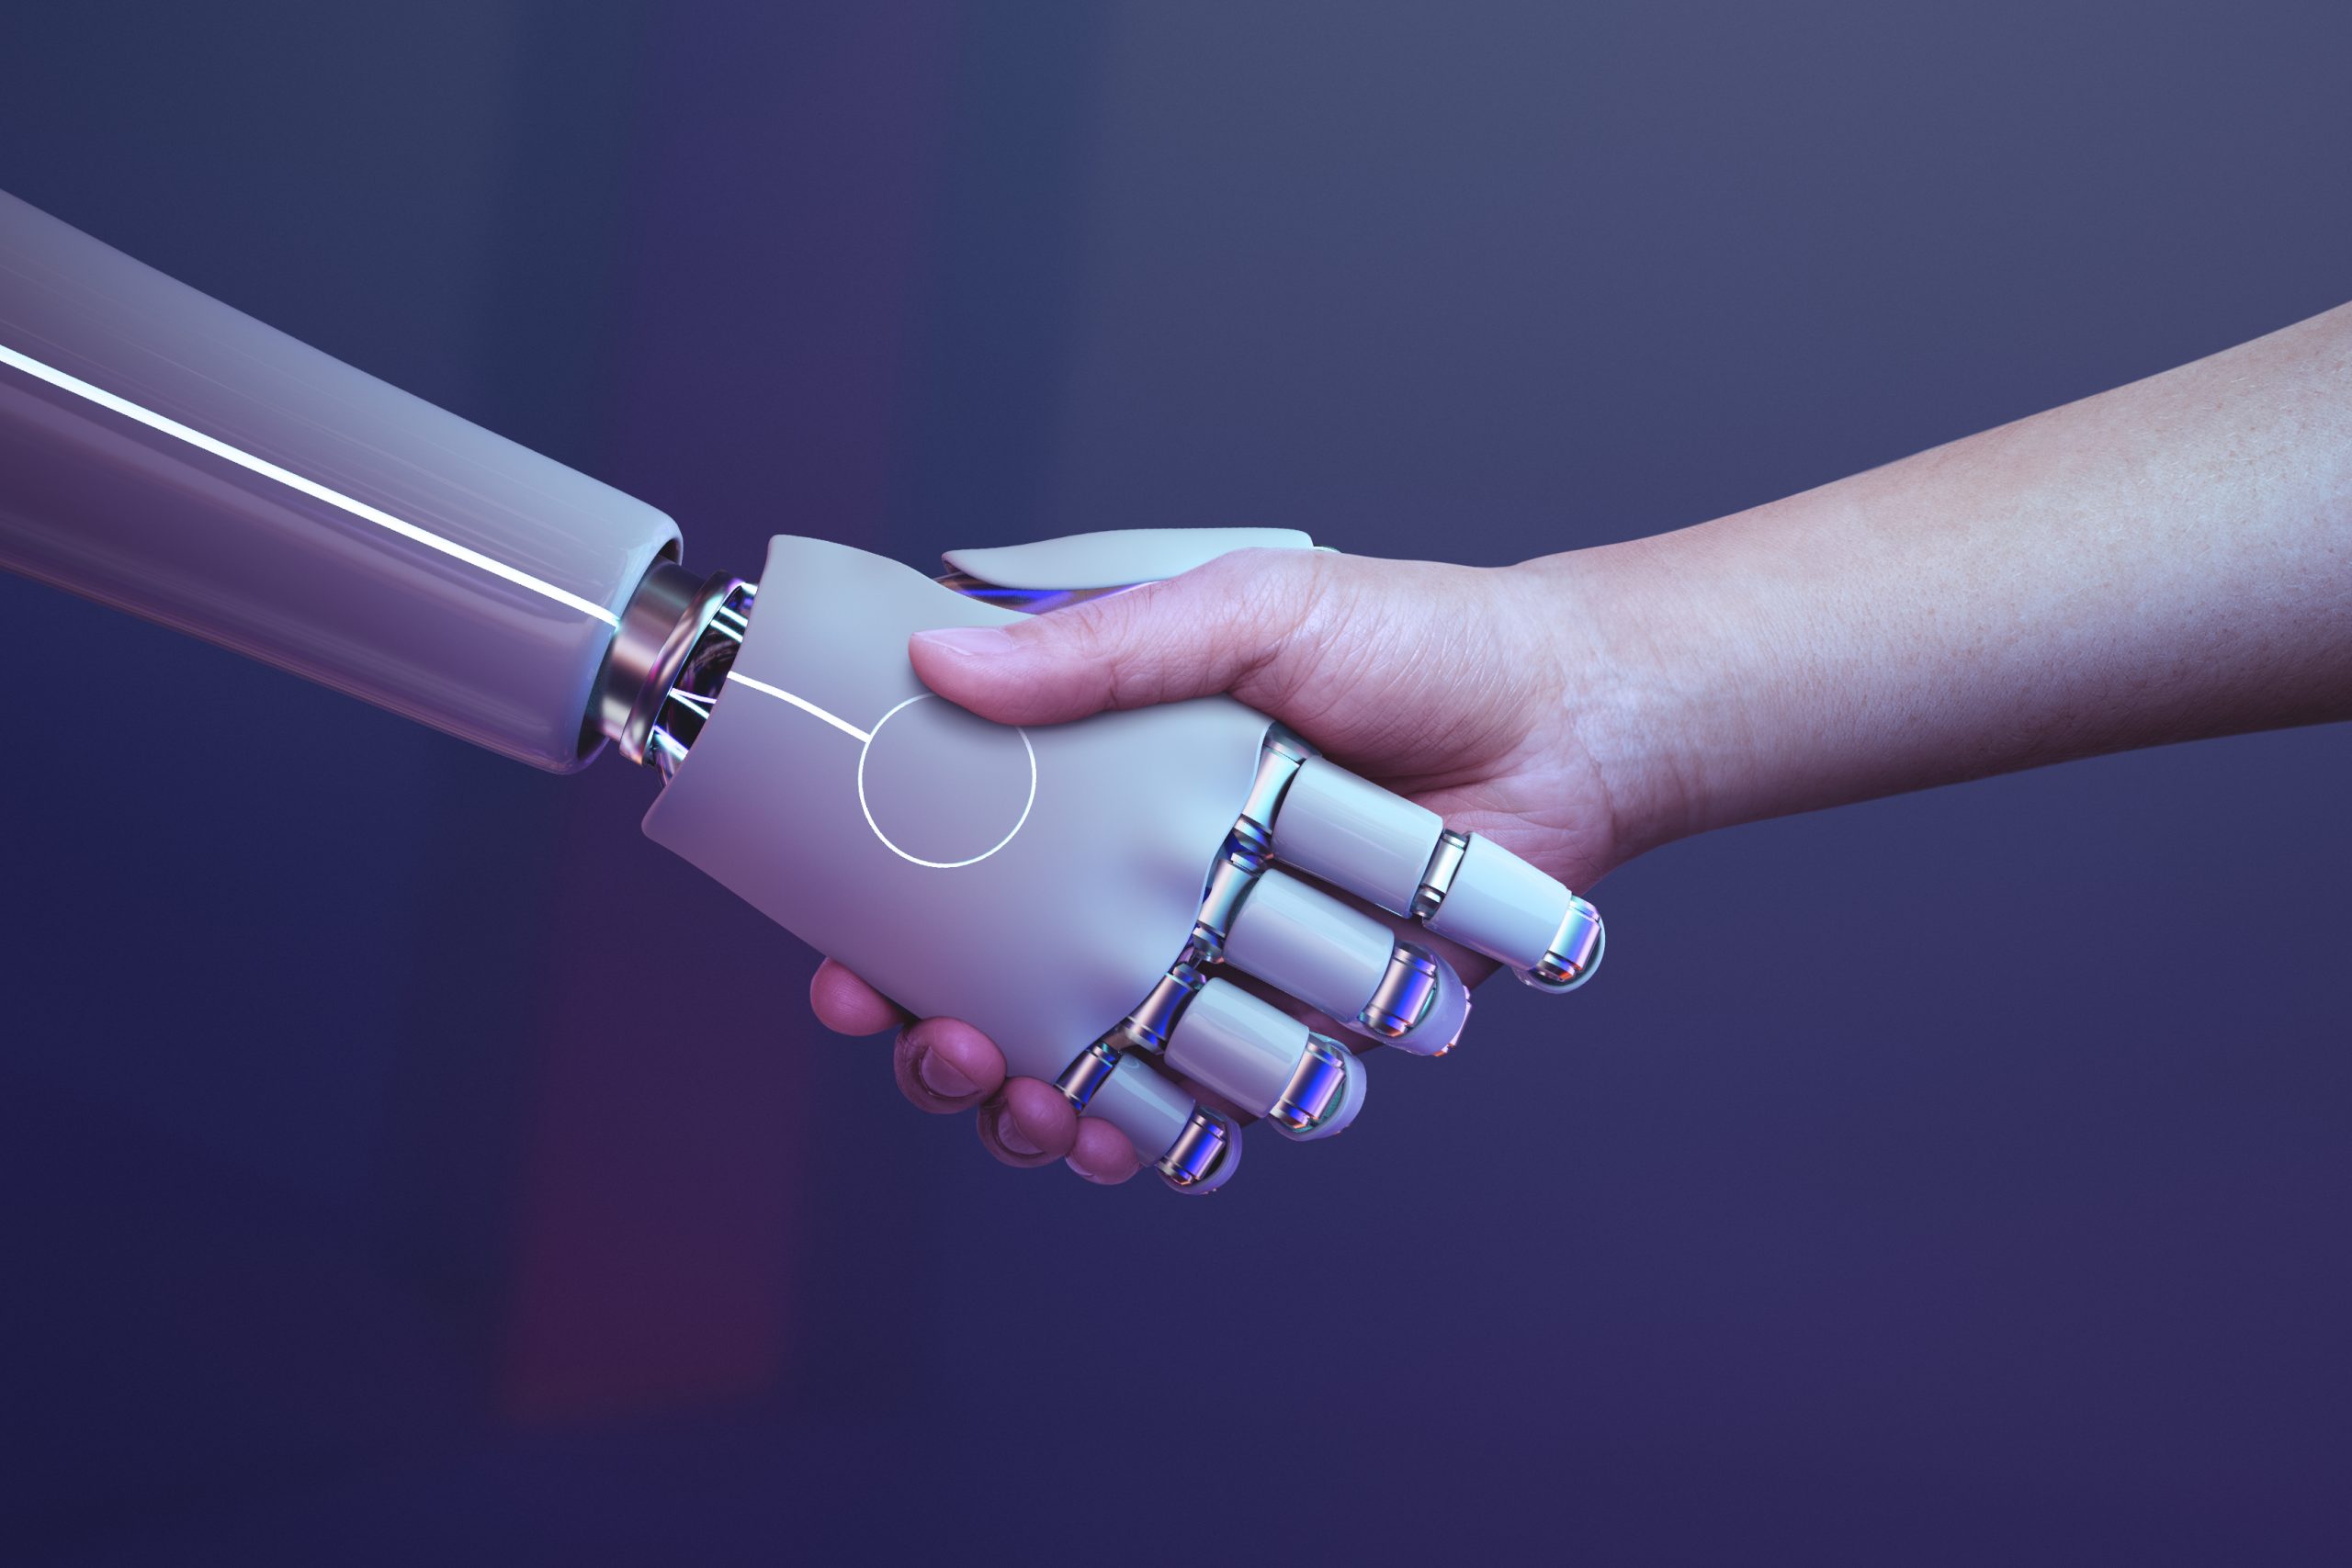 Mano de robot dándole la mano a un humano.